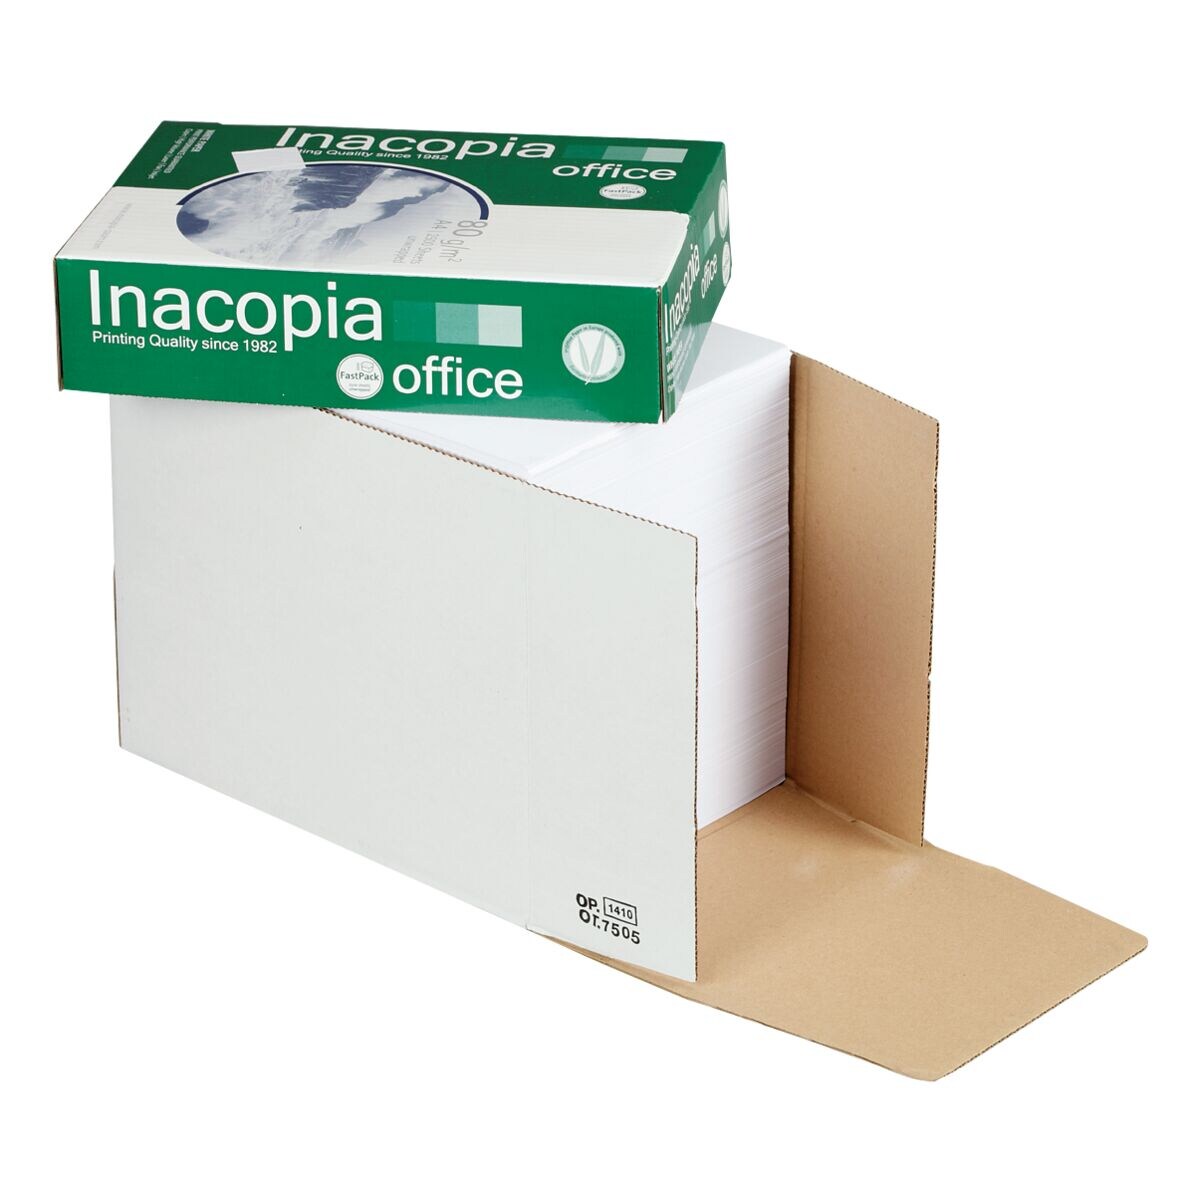 Bote-maxi de papier imprimante multifonction A4 Inacopia Office - 2500 feuilles au total